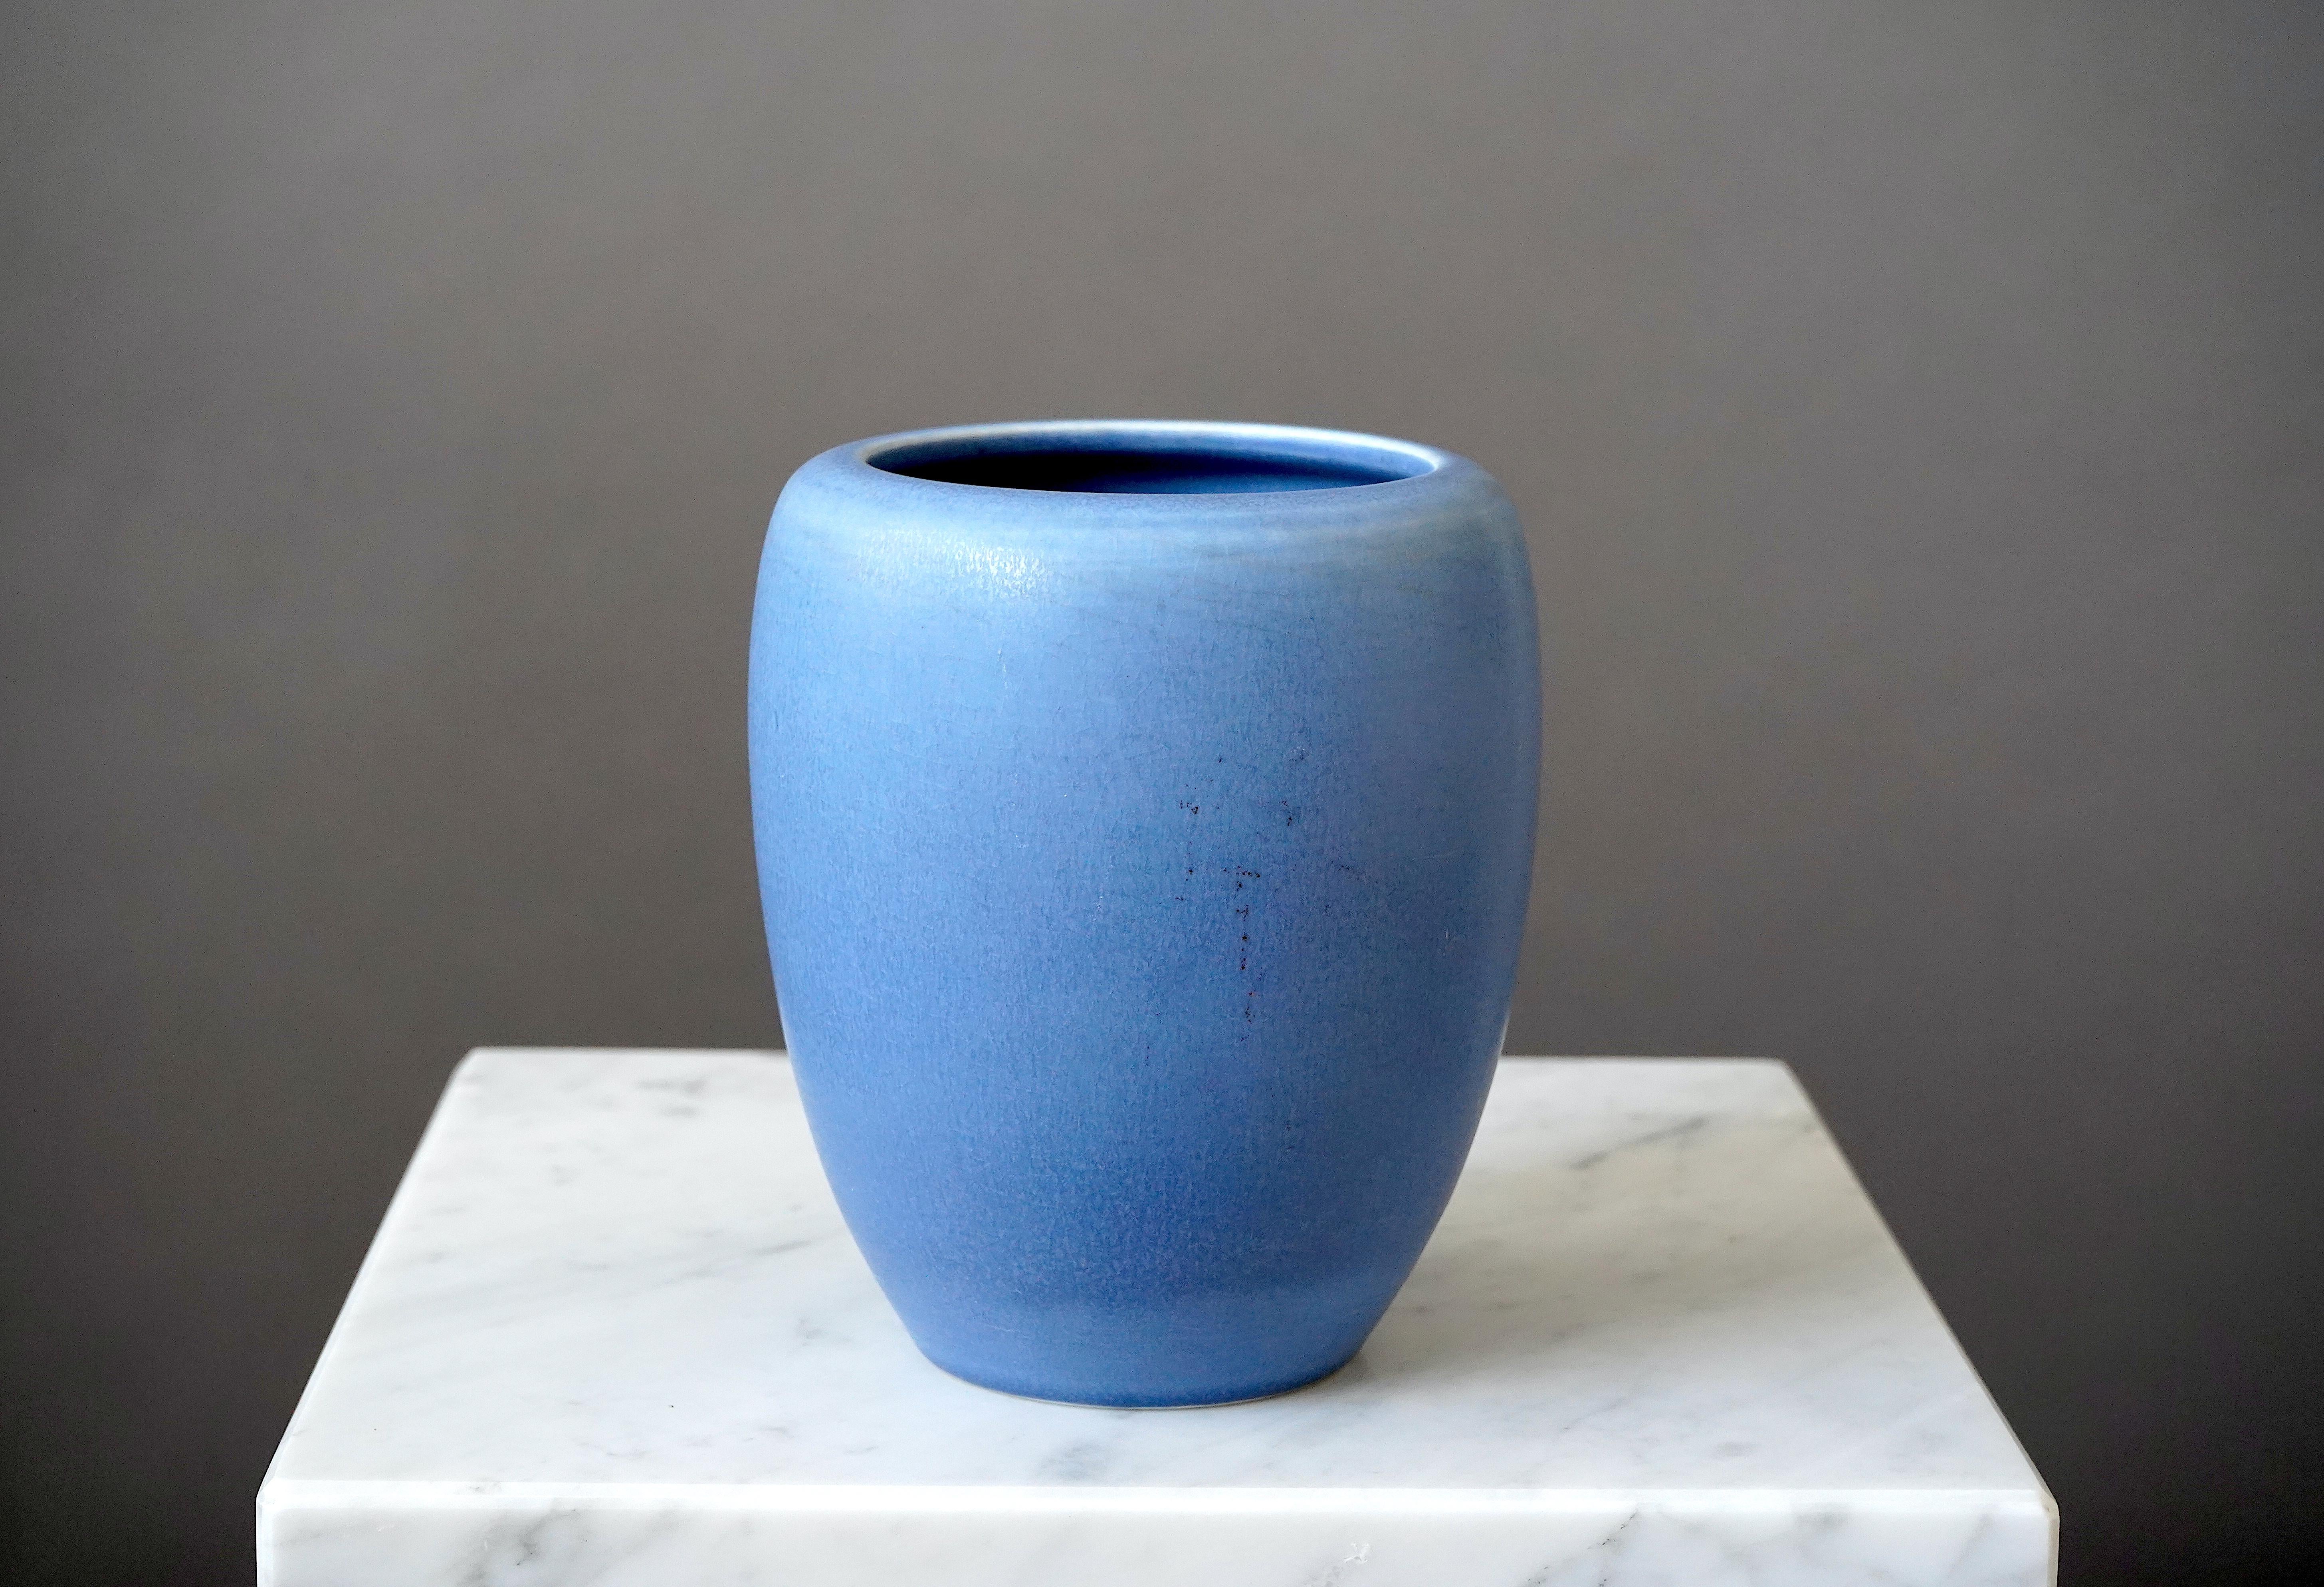 Schöne und seltene Vase aus Steingut, entworfen von Gertrud Lönegren.
Dieses Studio-Stück wurde zwischen 1936-41 in Rorstrand in Schweden geschaffen.

Ausgezeichneter Zustand. Aufgedruckt 'Rörstrand / Lönegren / HANDDREJAD'.

Gertrud Lönegren war